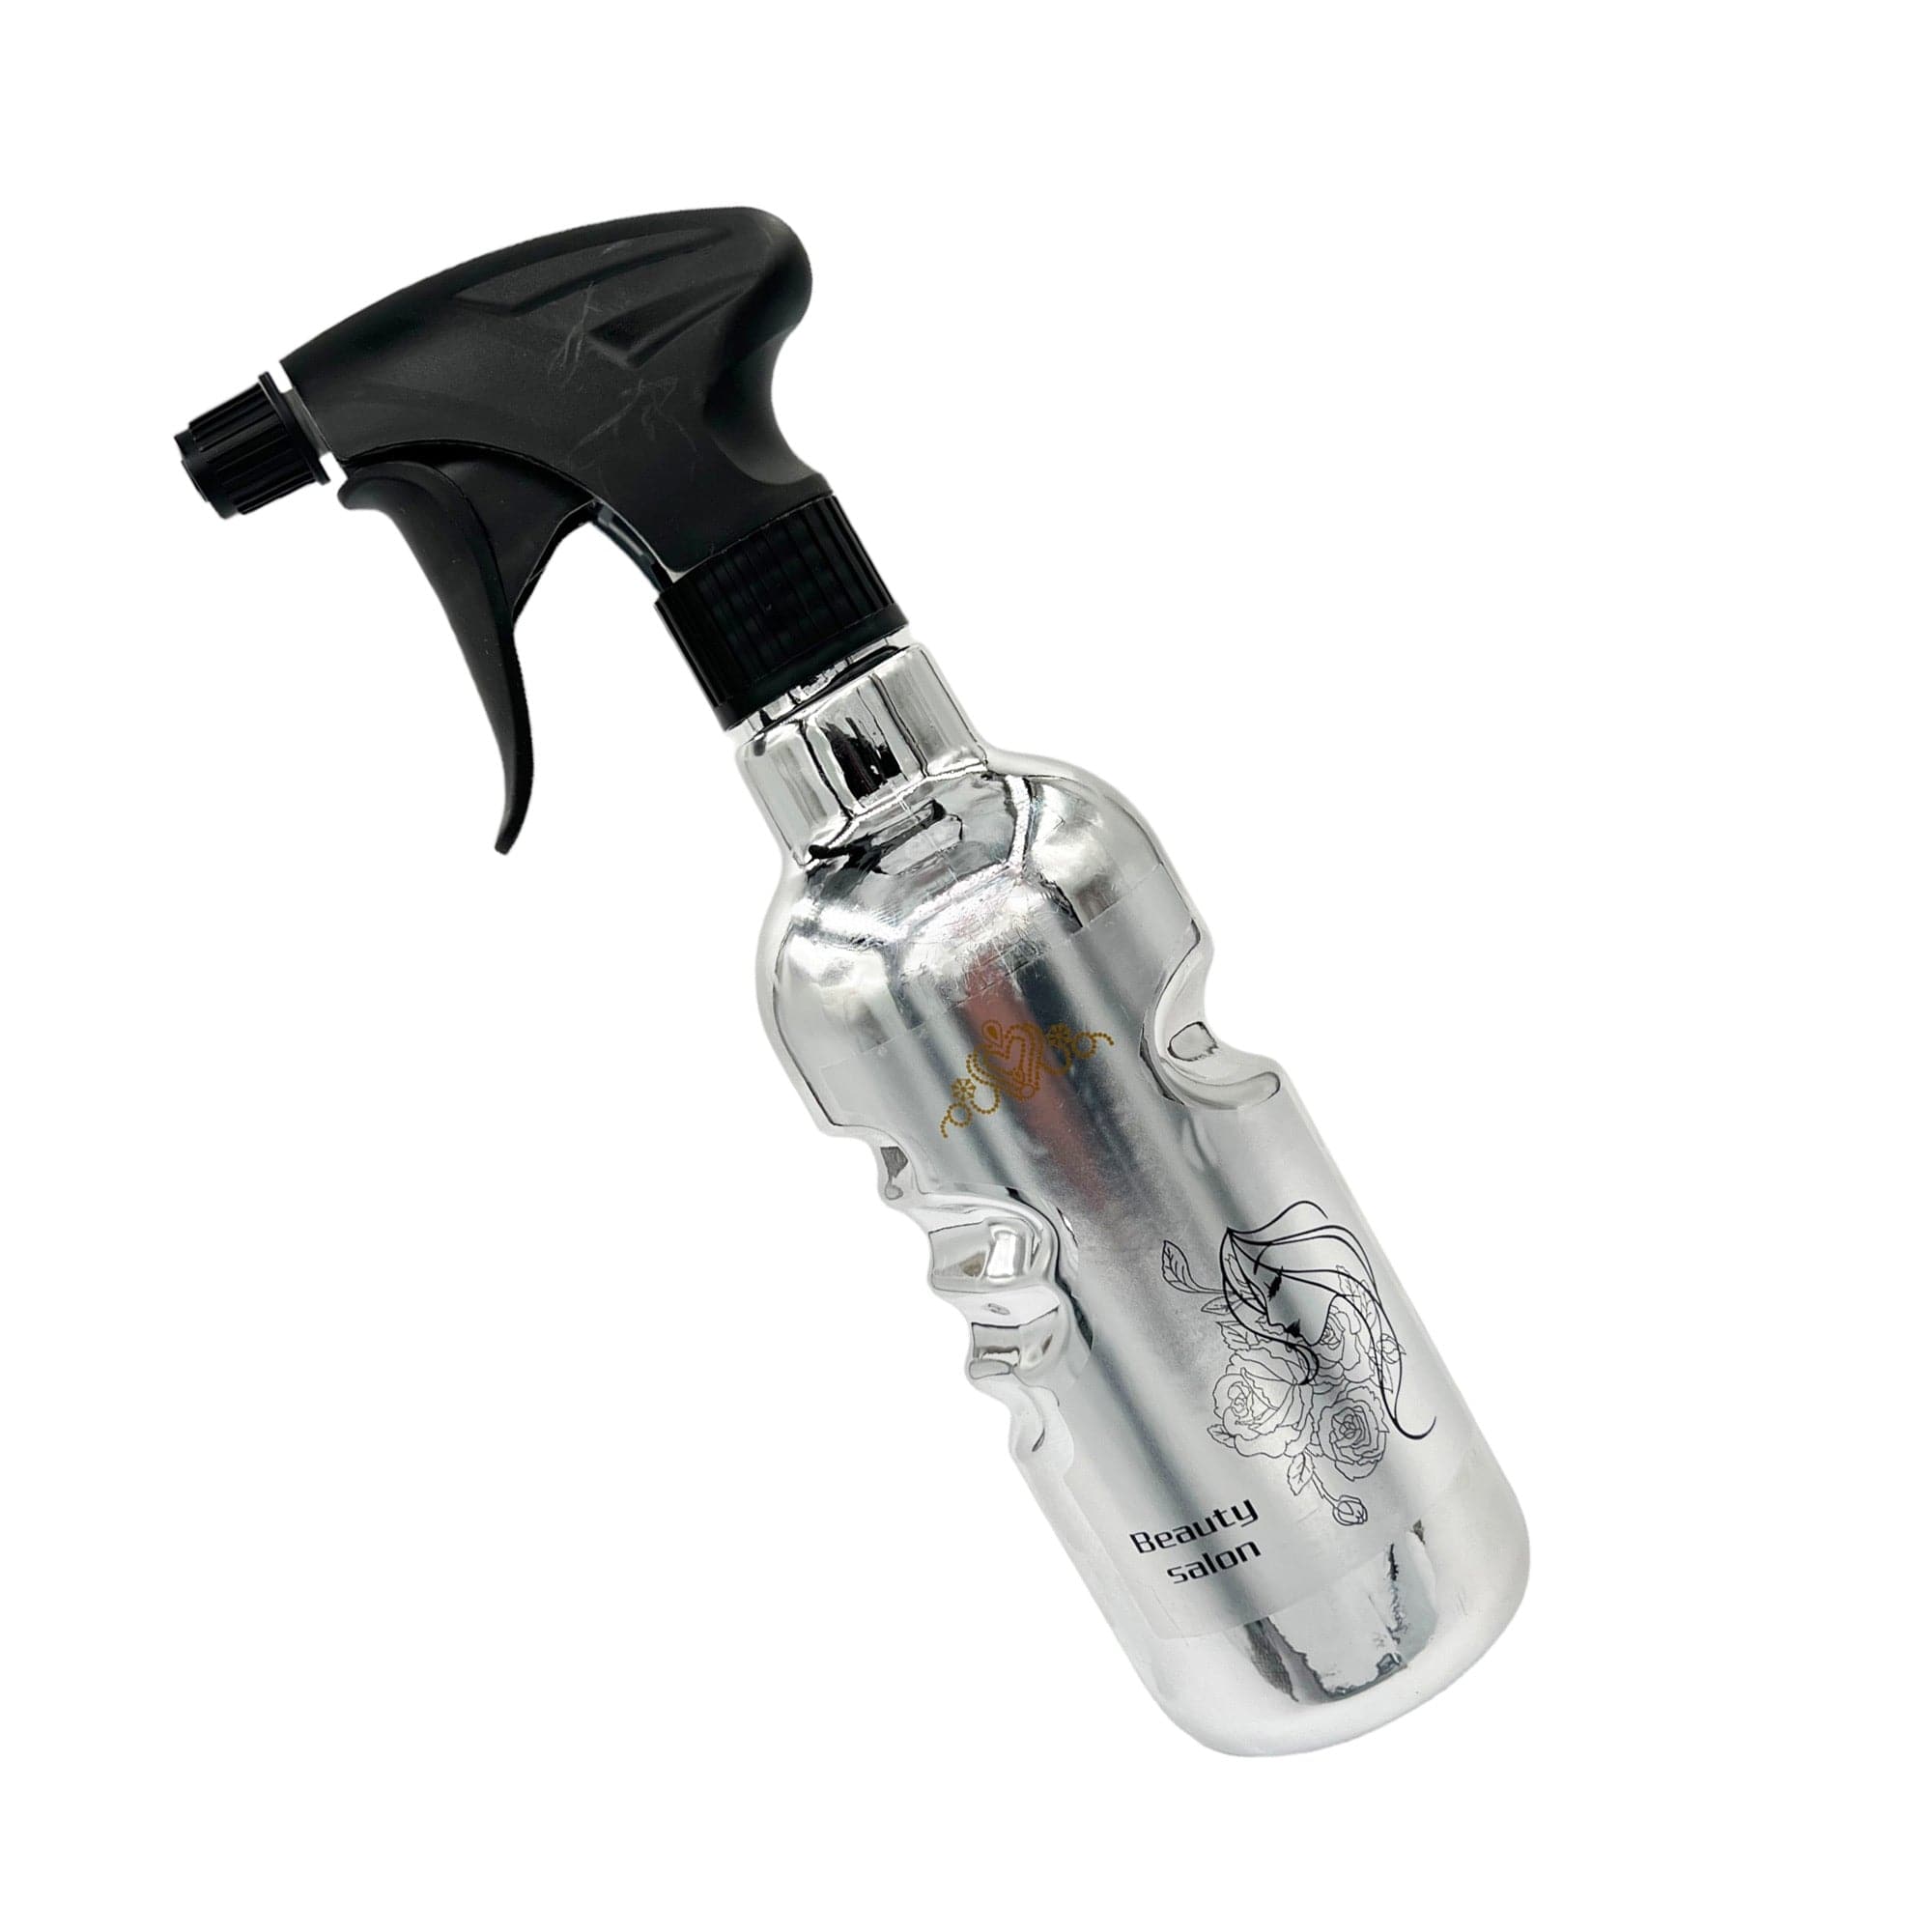 Eson - Water Spray Bottle 500ml Mist Sprayer Ergonomic Hand Grip (Silver)